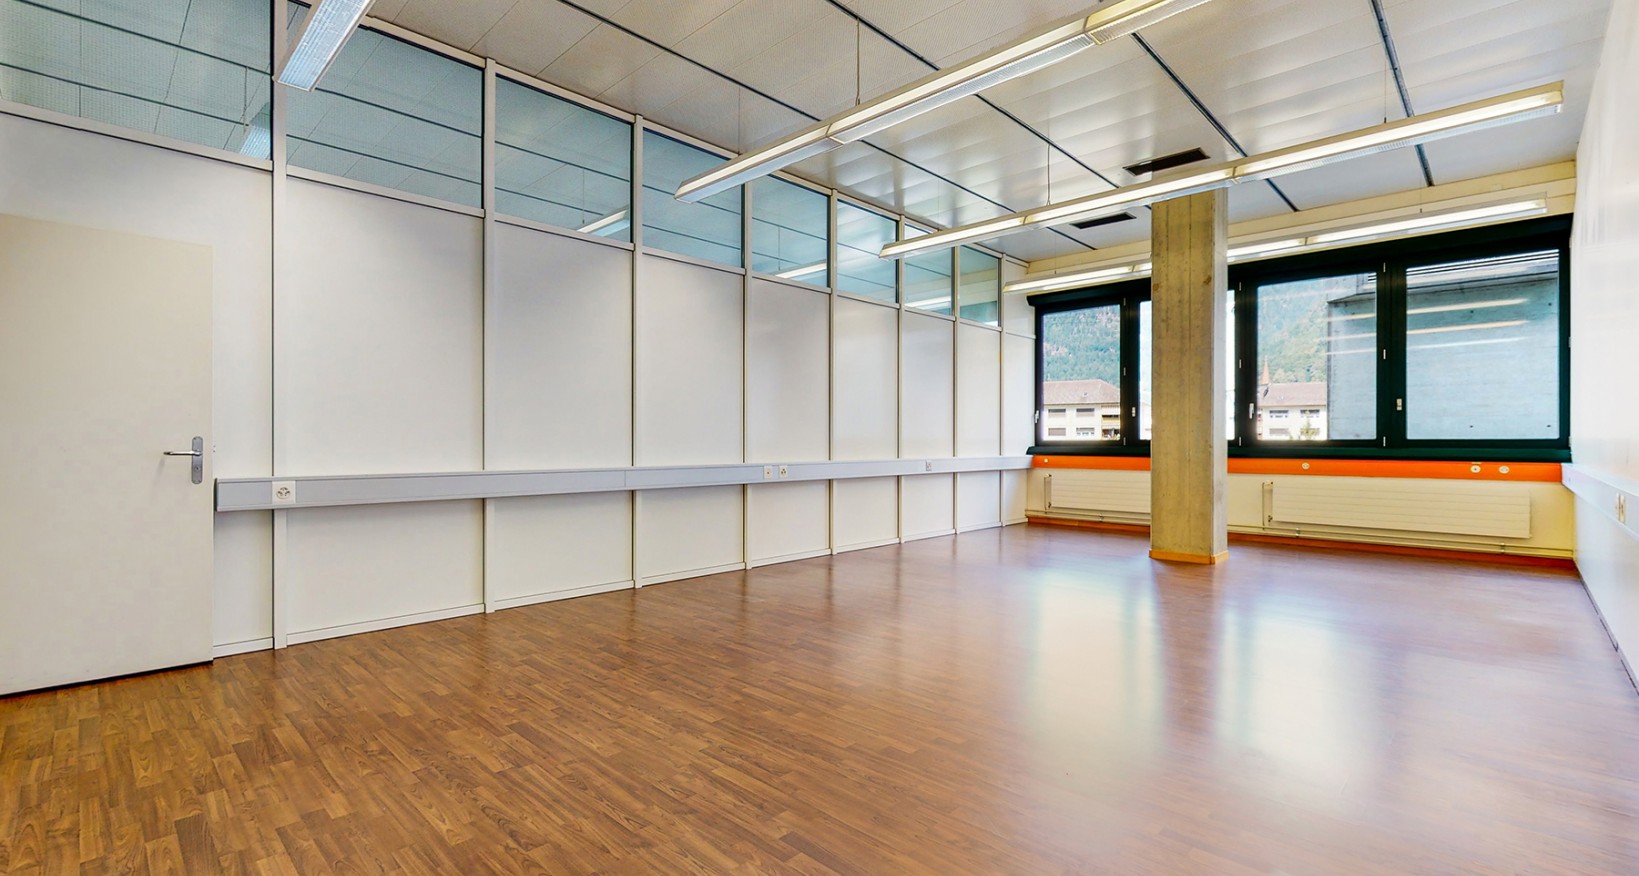 Wir vermieten per sofort oder nach Vereinbarung in einem gepflegten Geschäftshaus attraktive Büroflächen an bester Lage in Interlaken.